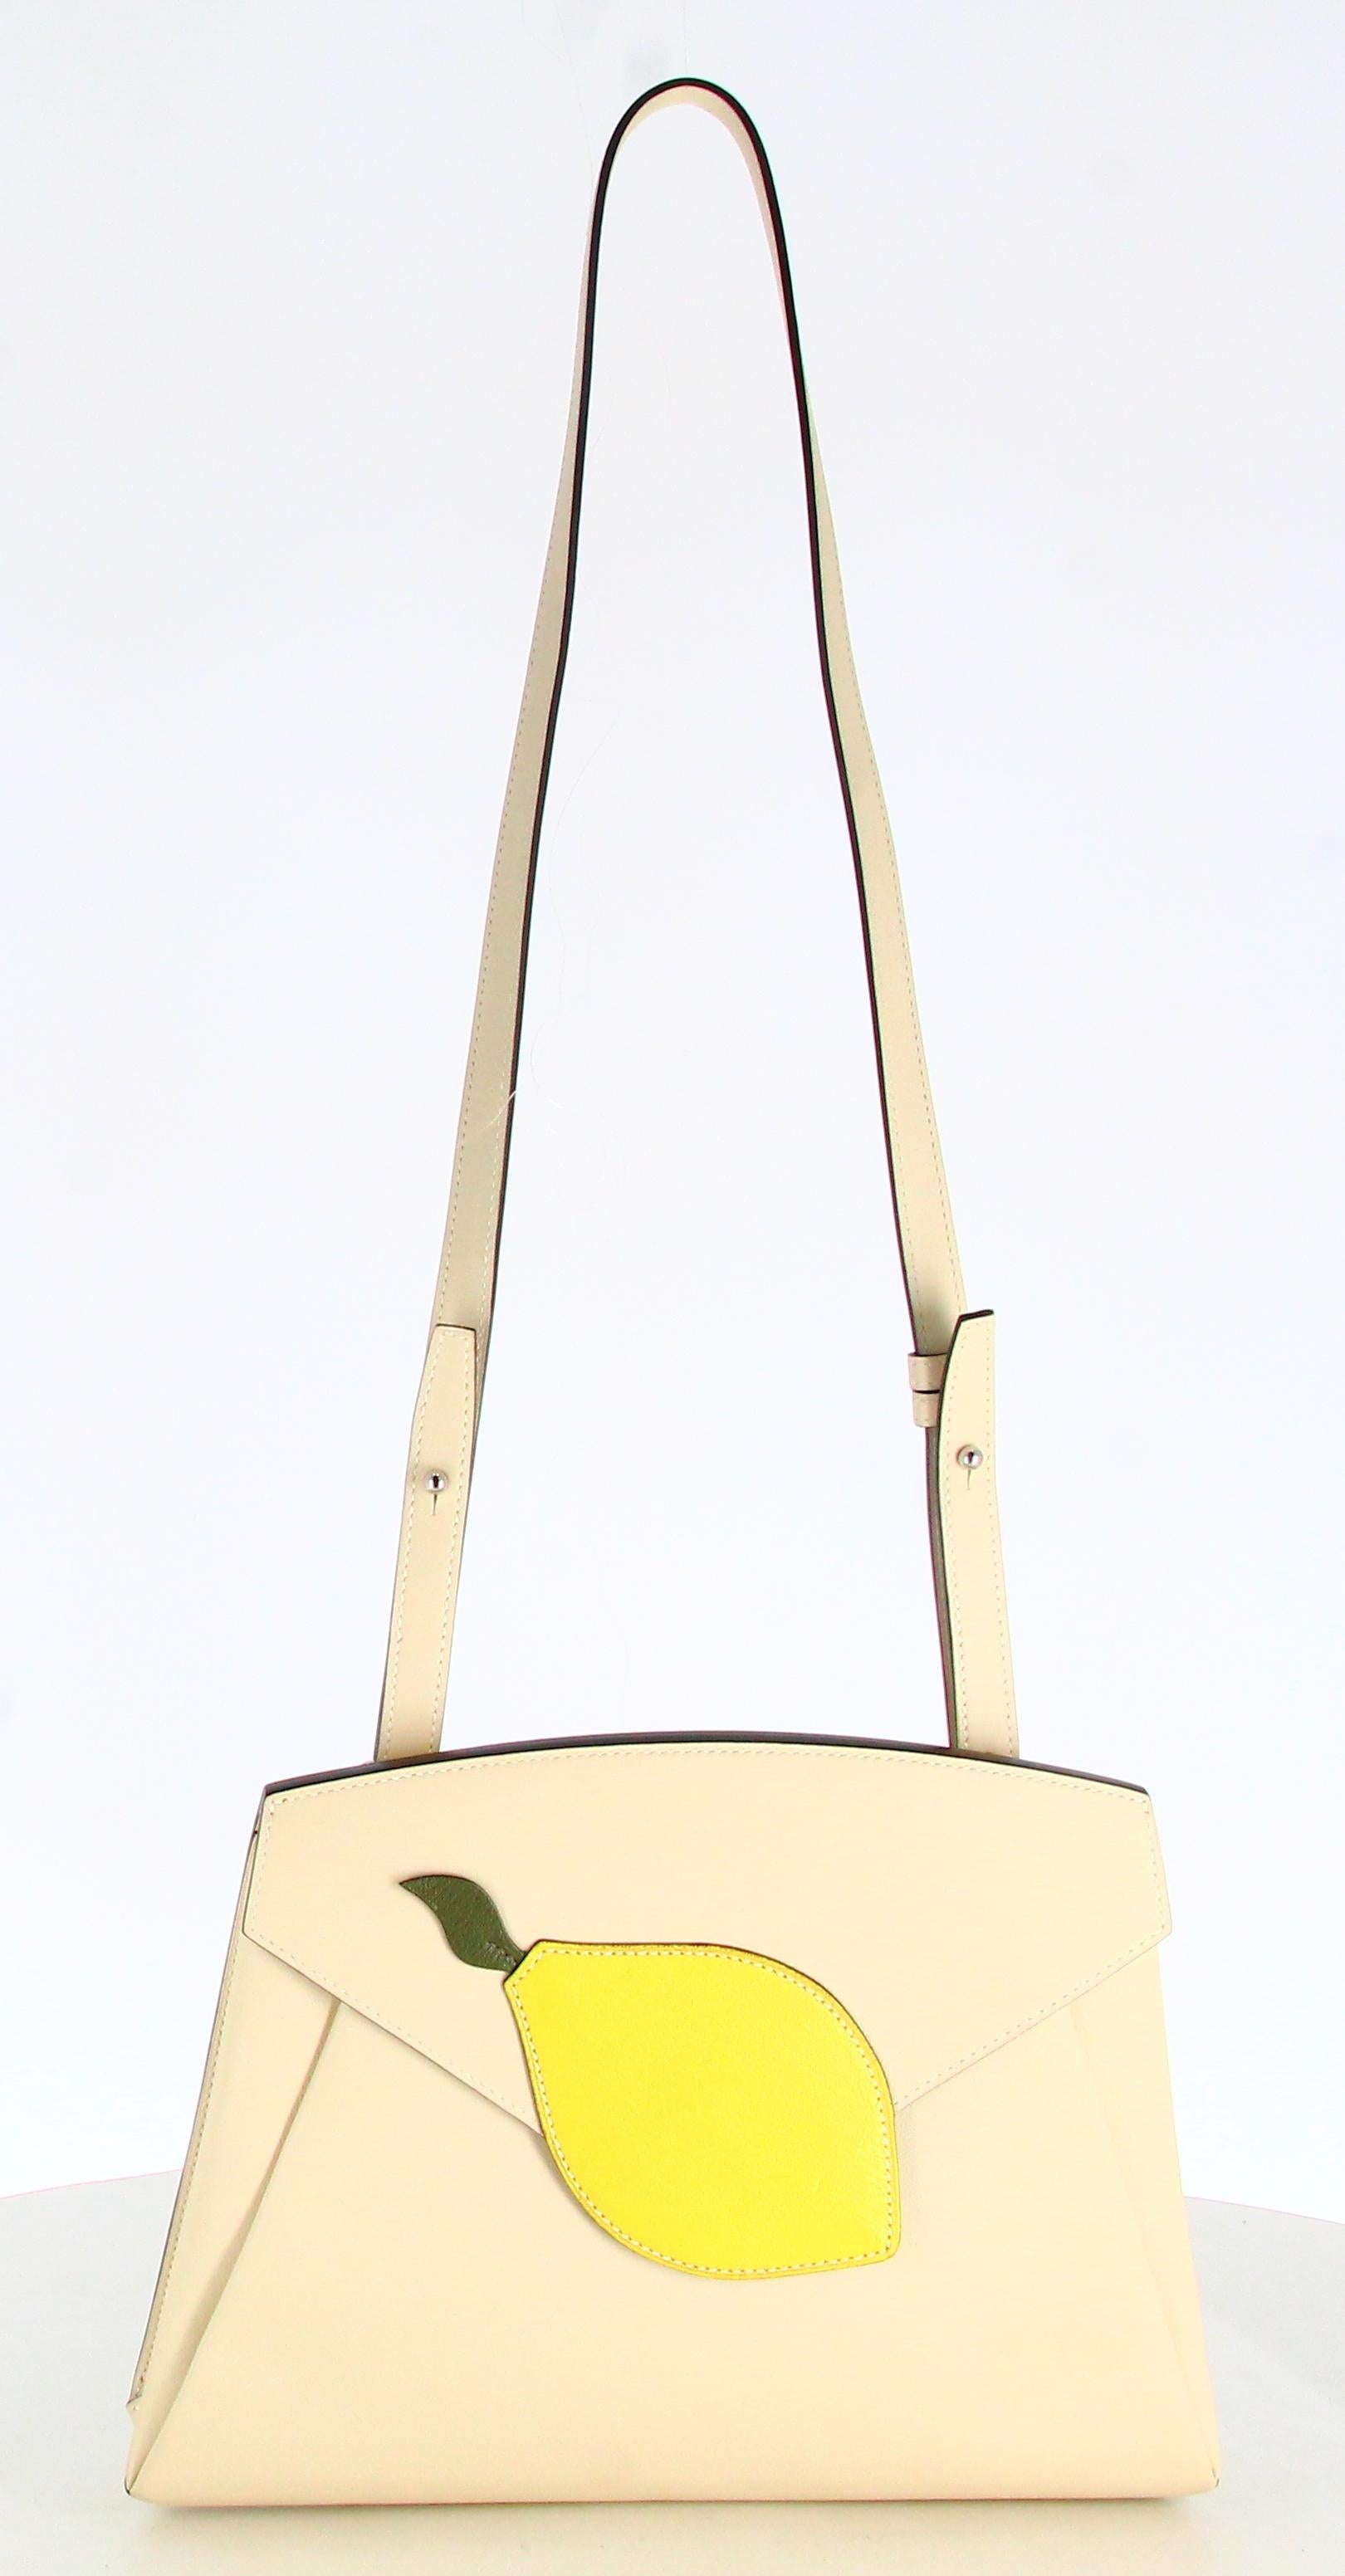 Hermès Lemon Handbag
- Very good condition. Shows very slight signs of wear over time.
- Hermès bag 
- Beige leather 
- Lemon on front
- beige shoulder strap 